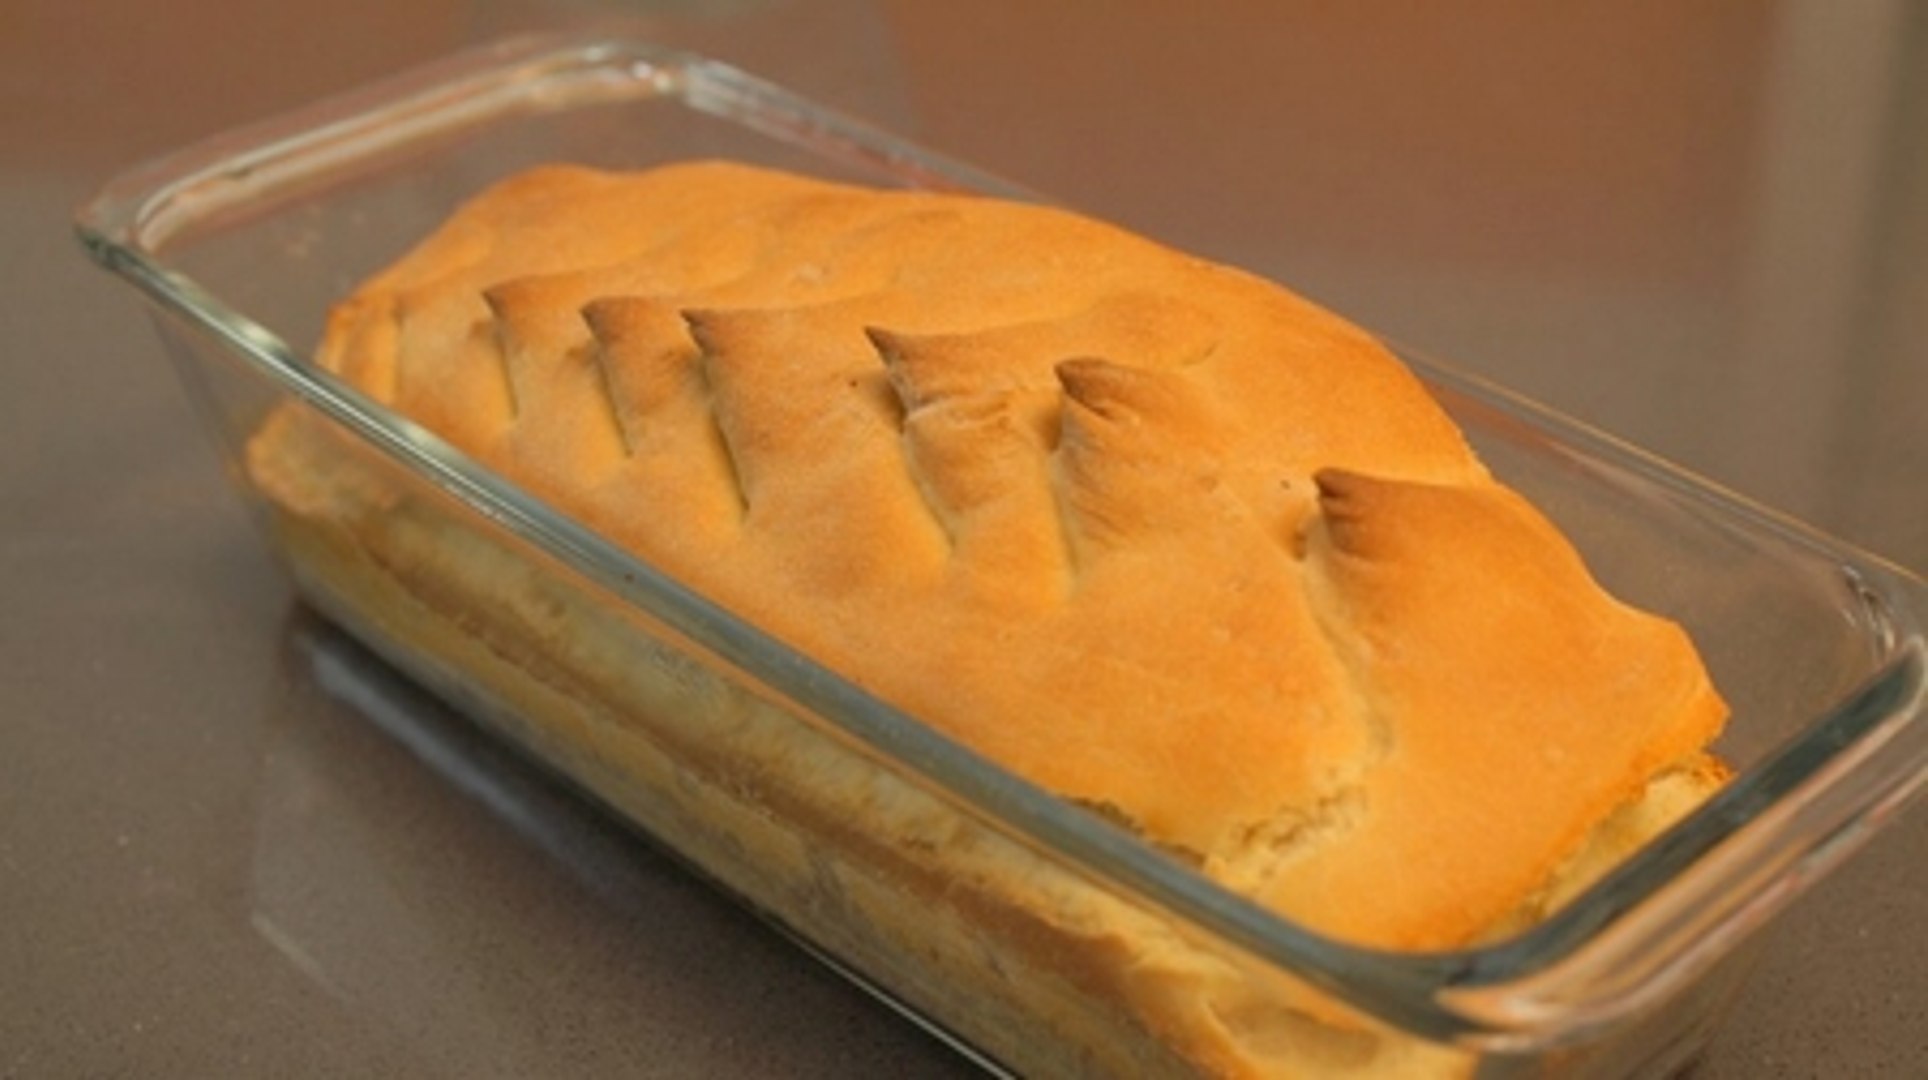 Pain maison : comment faire son pain maison sans machine à pain - Vidéo  Dailymotion